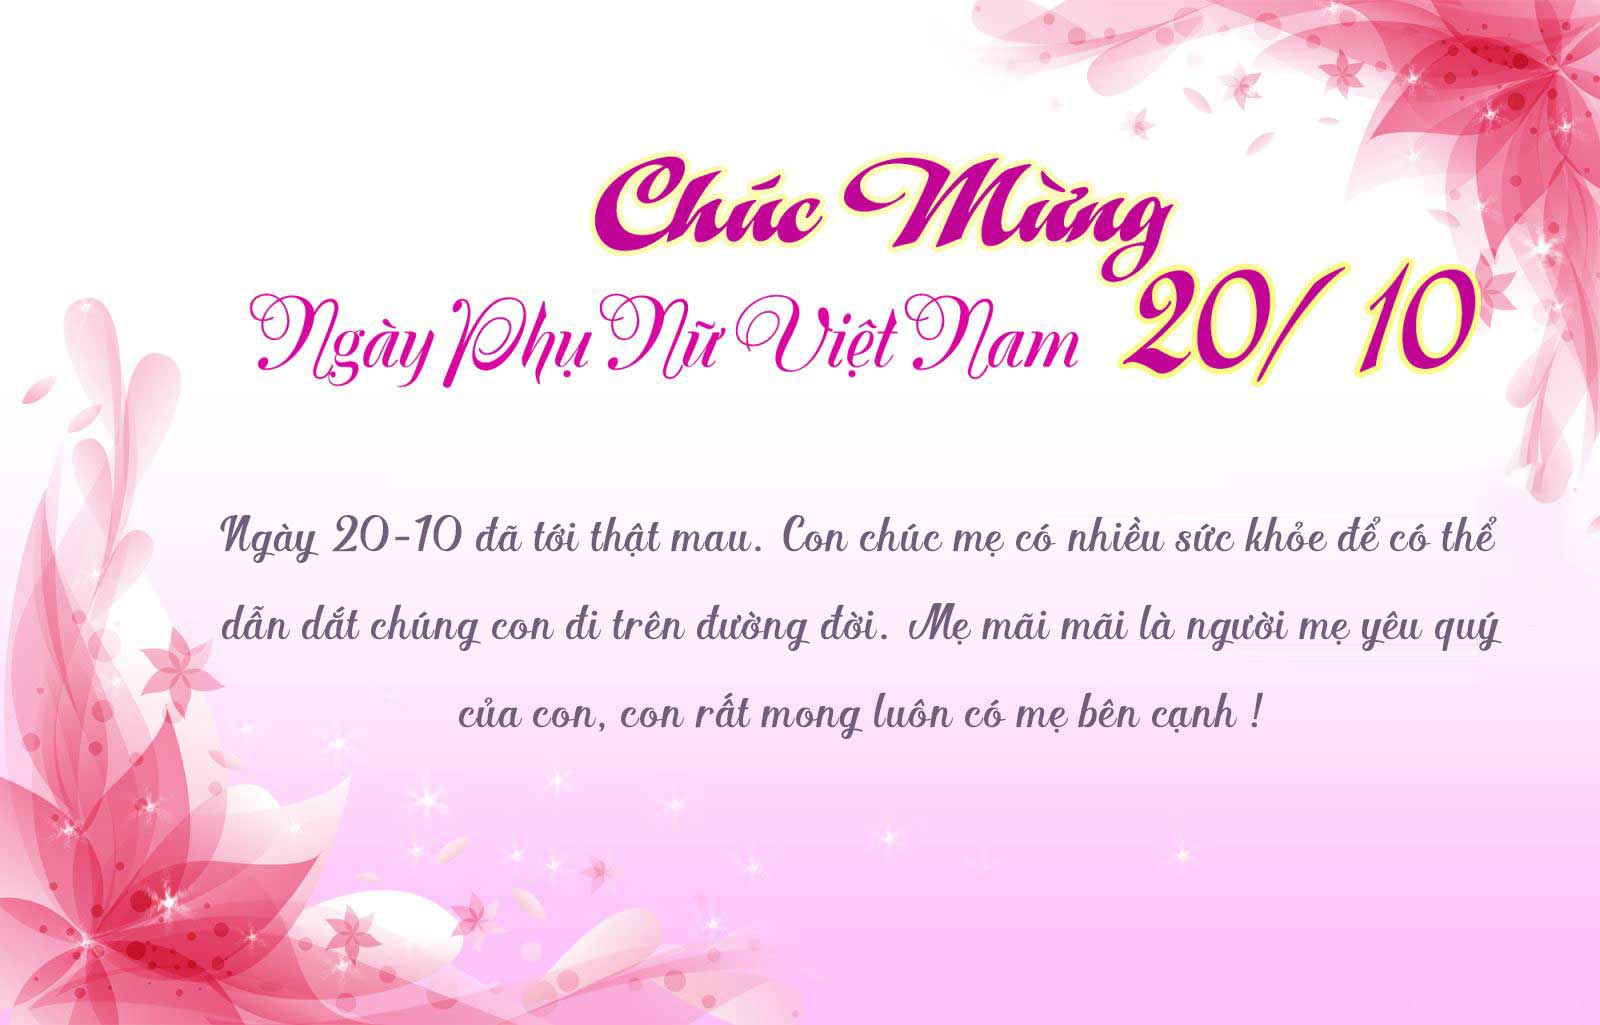 Thiệp chúc mừng ngày Phụ nữ Việt Nam 20-10 ý nghĩa